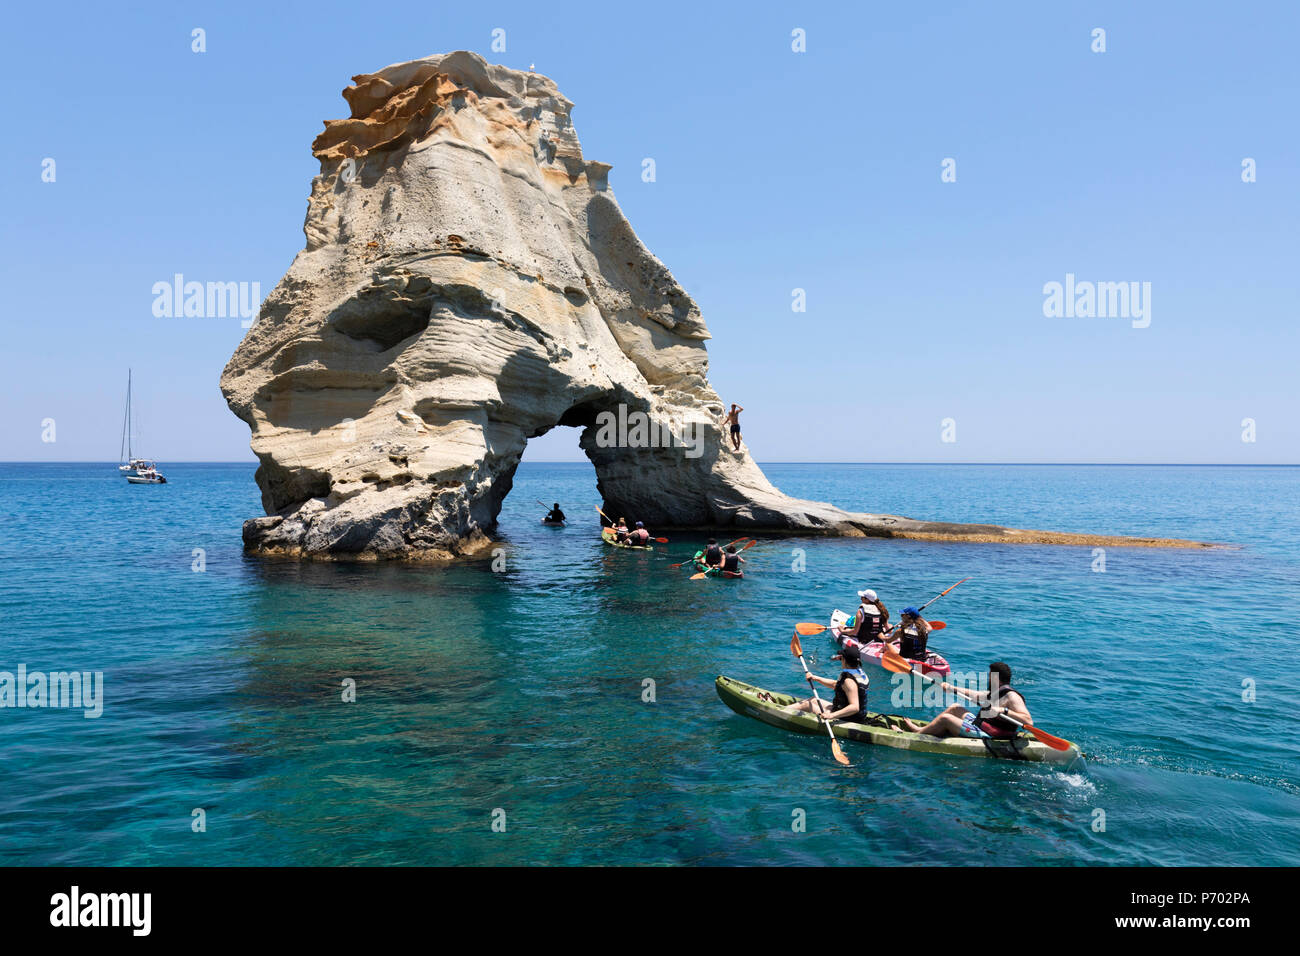 Kayakers andare attraverso arch rock formazione con acqua cristallina, Kleftiko, Milos, Cicladi, il Mare Egeo e le isole greche, Grecia, Europa Foto Stock